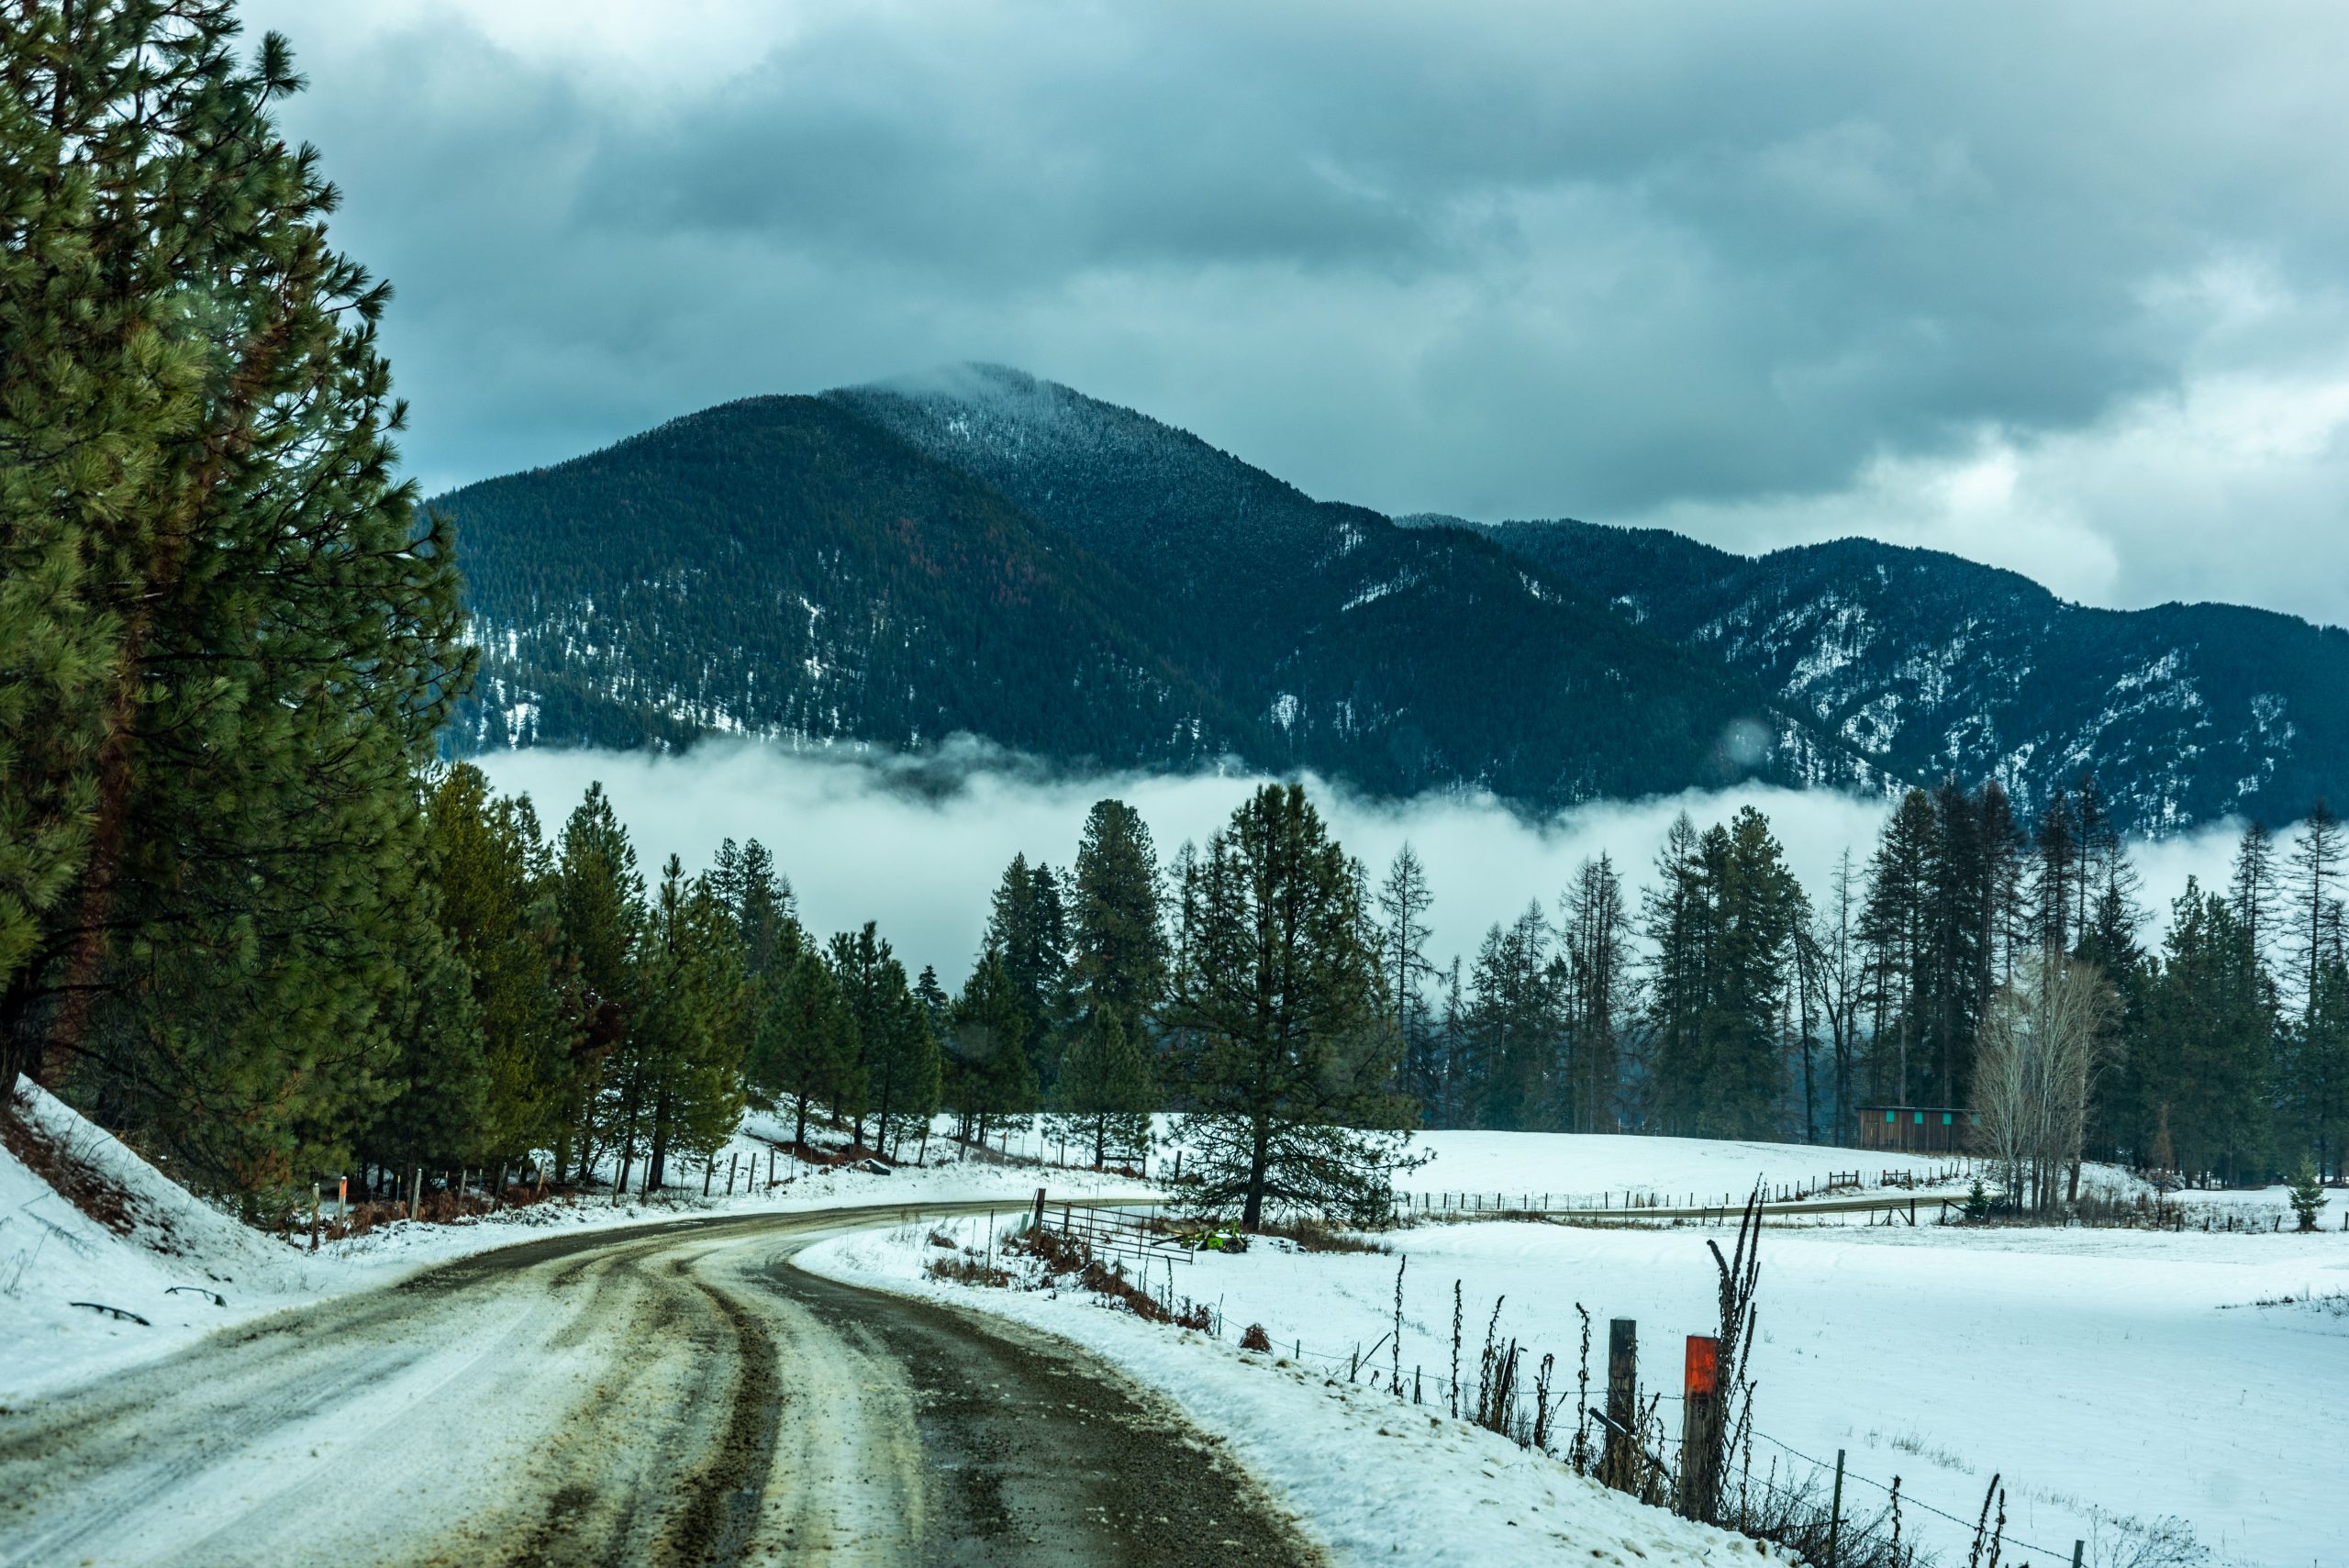 A winter scene in western Montana